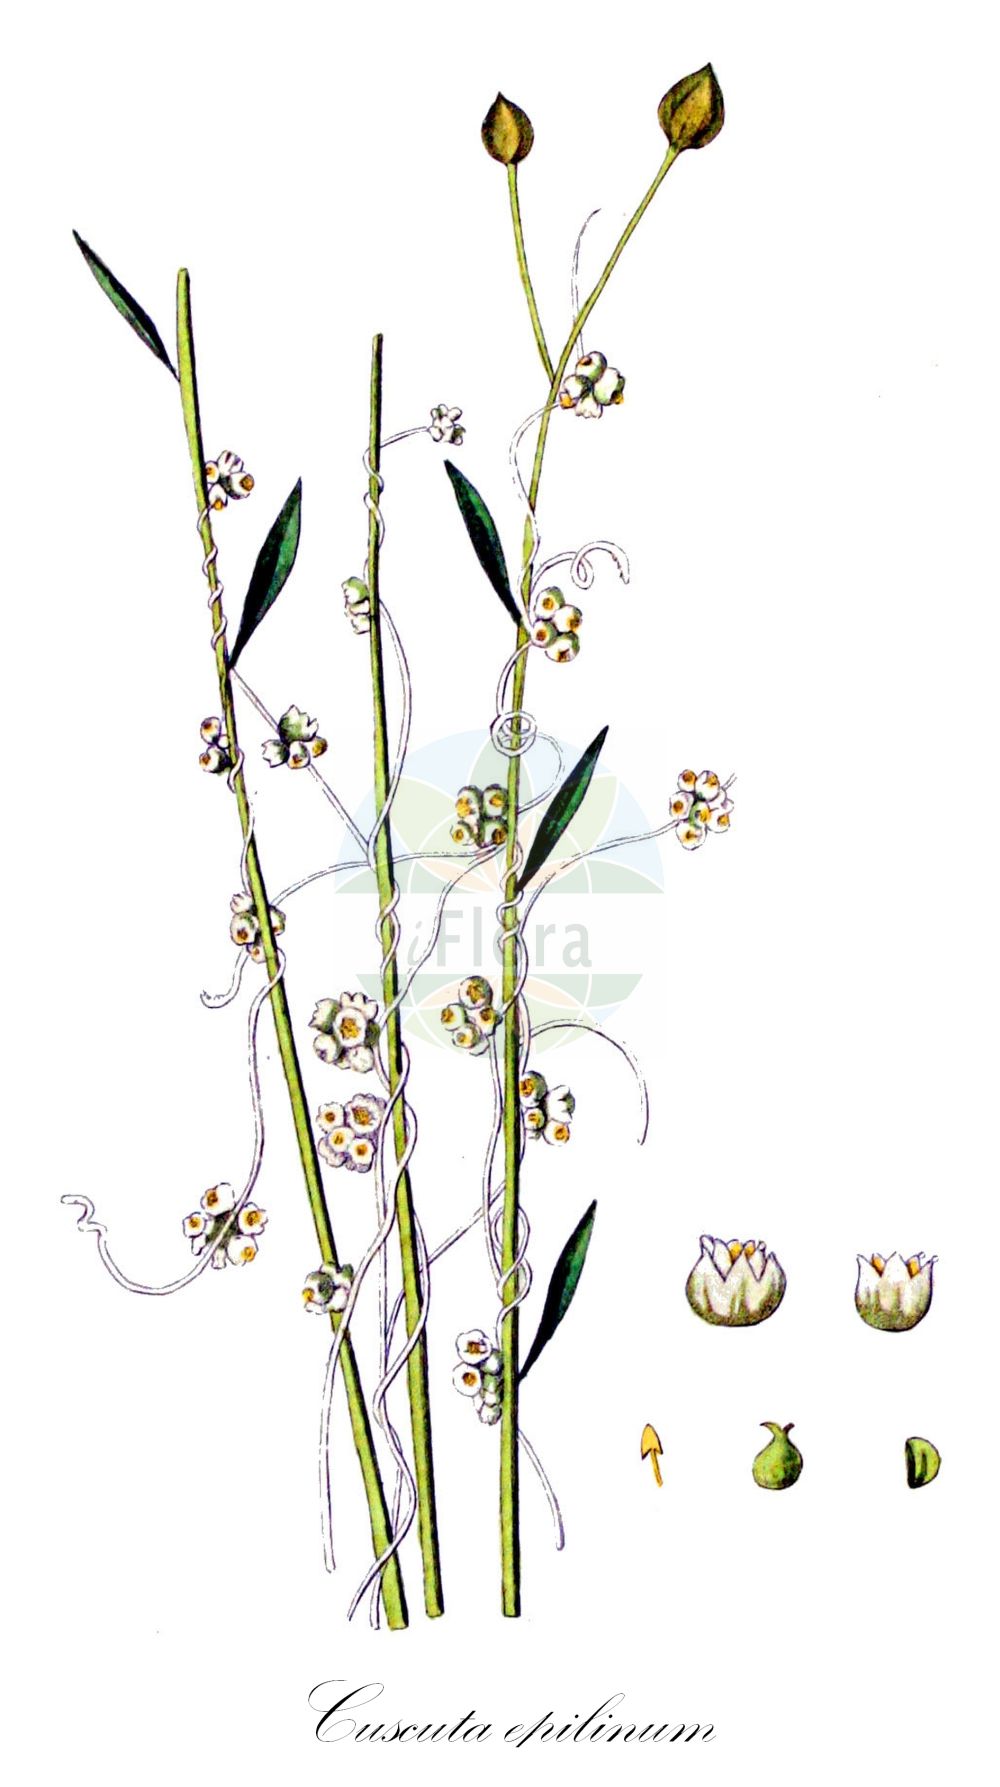 Historische Abbildung von Cuscuta epilinum (Flachs-Seide - Flax Dodder). Das Bild zeigt Blatt, Bluete, Frucht und Same. ---- Historical Drawing of Cuscuta epilinum (Flachs-Seide - Flax Dodder). The image is showing leaf, flower, fruit and seed.(Cuscuta epilinum,Flachs-Seide,Flax Dodder,Cuscuta epilinum,Flachs-Seide,Flachs-Teufelszwirn,Lein-Seide,Flax Dodder,Cuscuta,Seide,Dodder,Convolvulaceae,Windengewächse,Bindweed family,Blatt,Bluete,Frucht,Same,leaf,flower,fruit,seed,Kops (1800-1934))